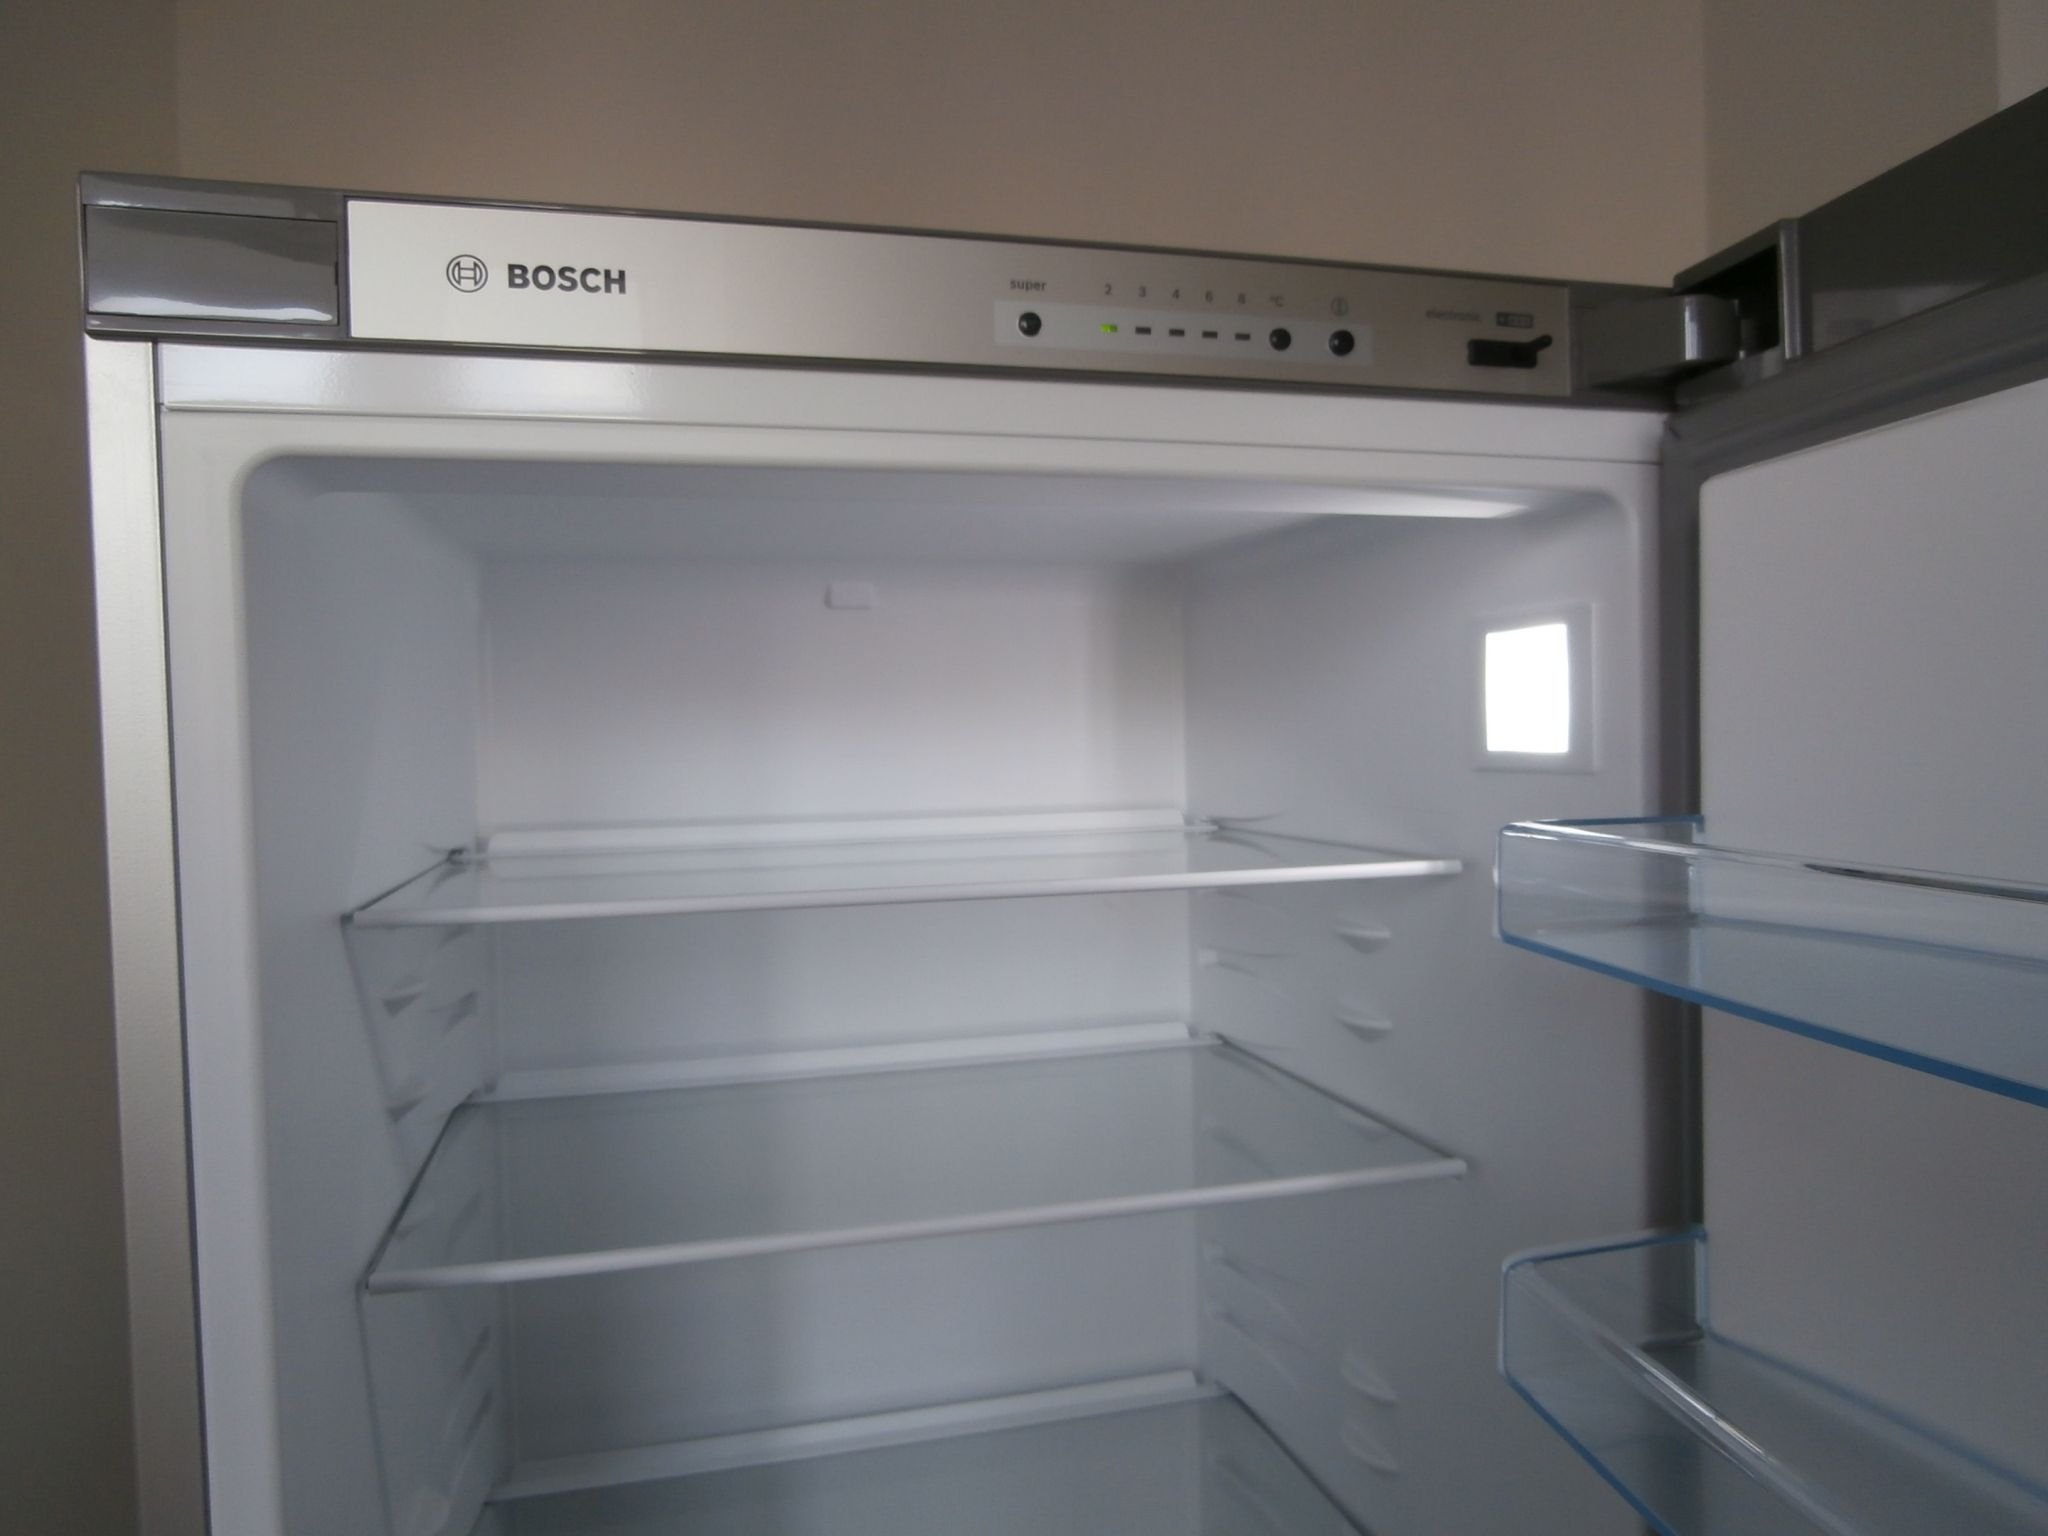 В холодильнике Bosh мигает индикатор температуры холодильного отделения